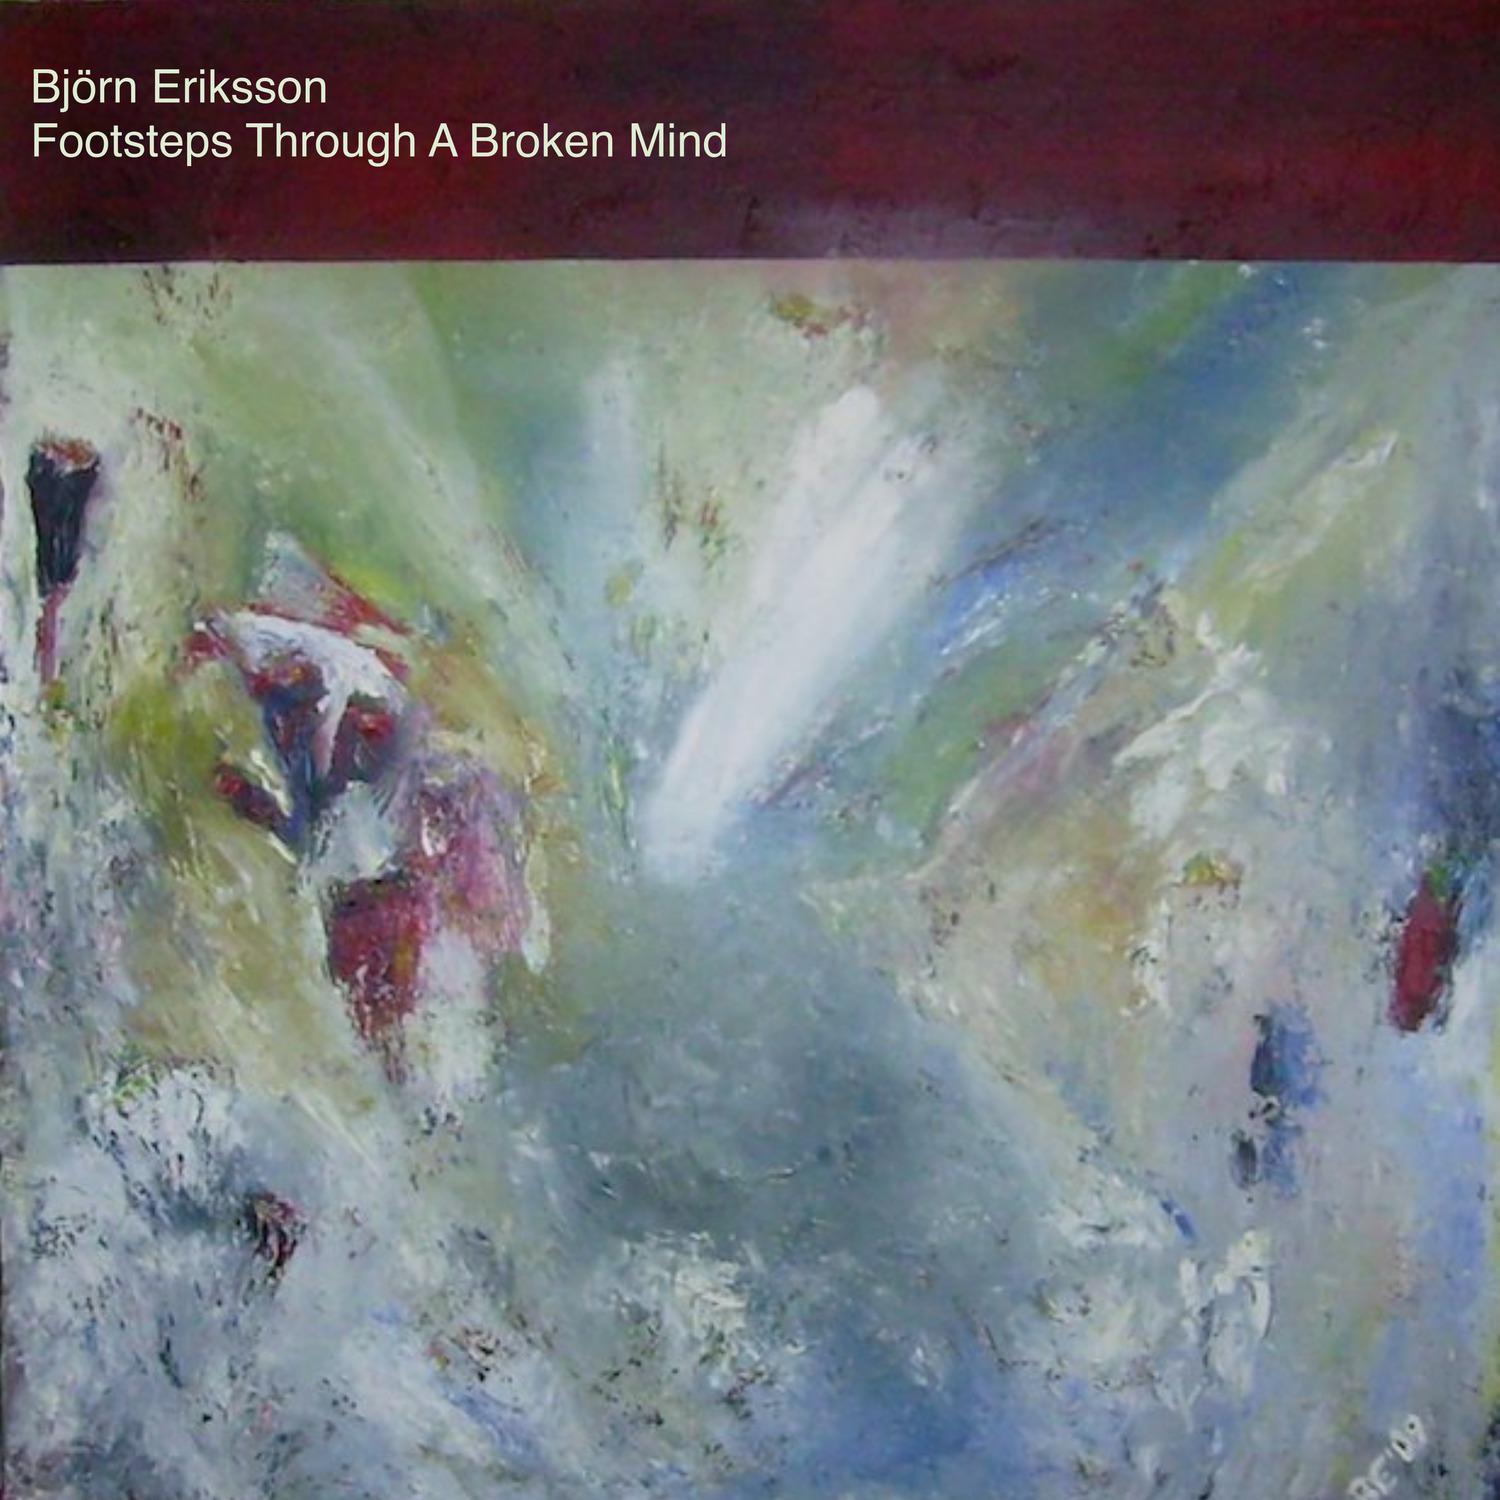 Björn Eriksson - A Progressive Symphony